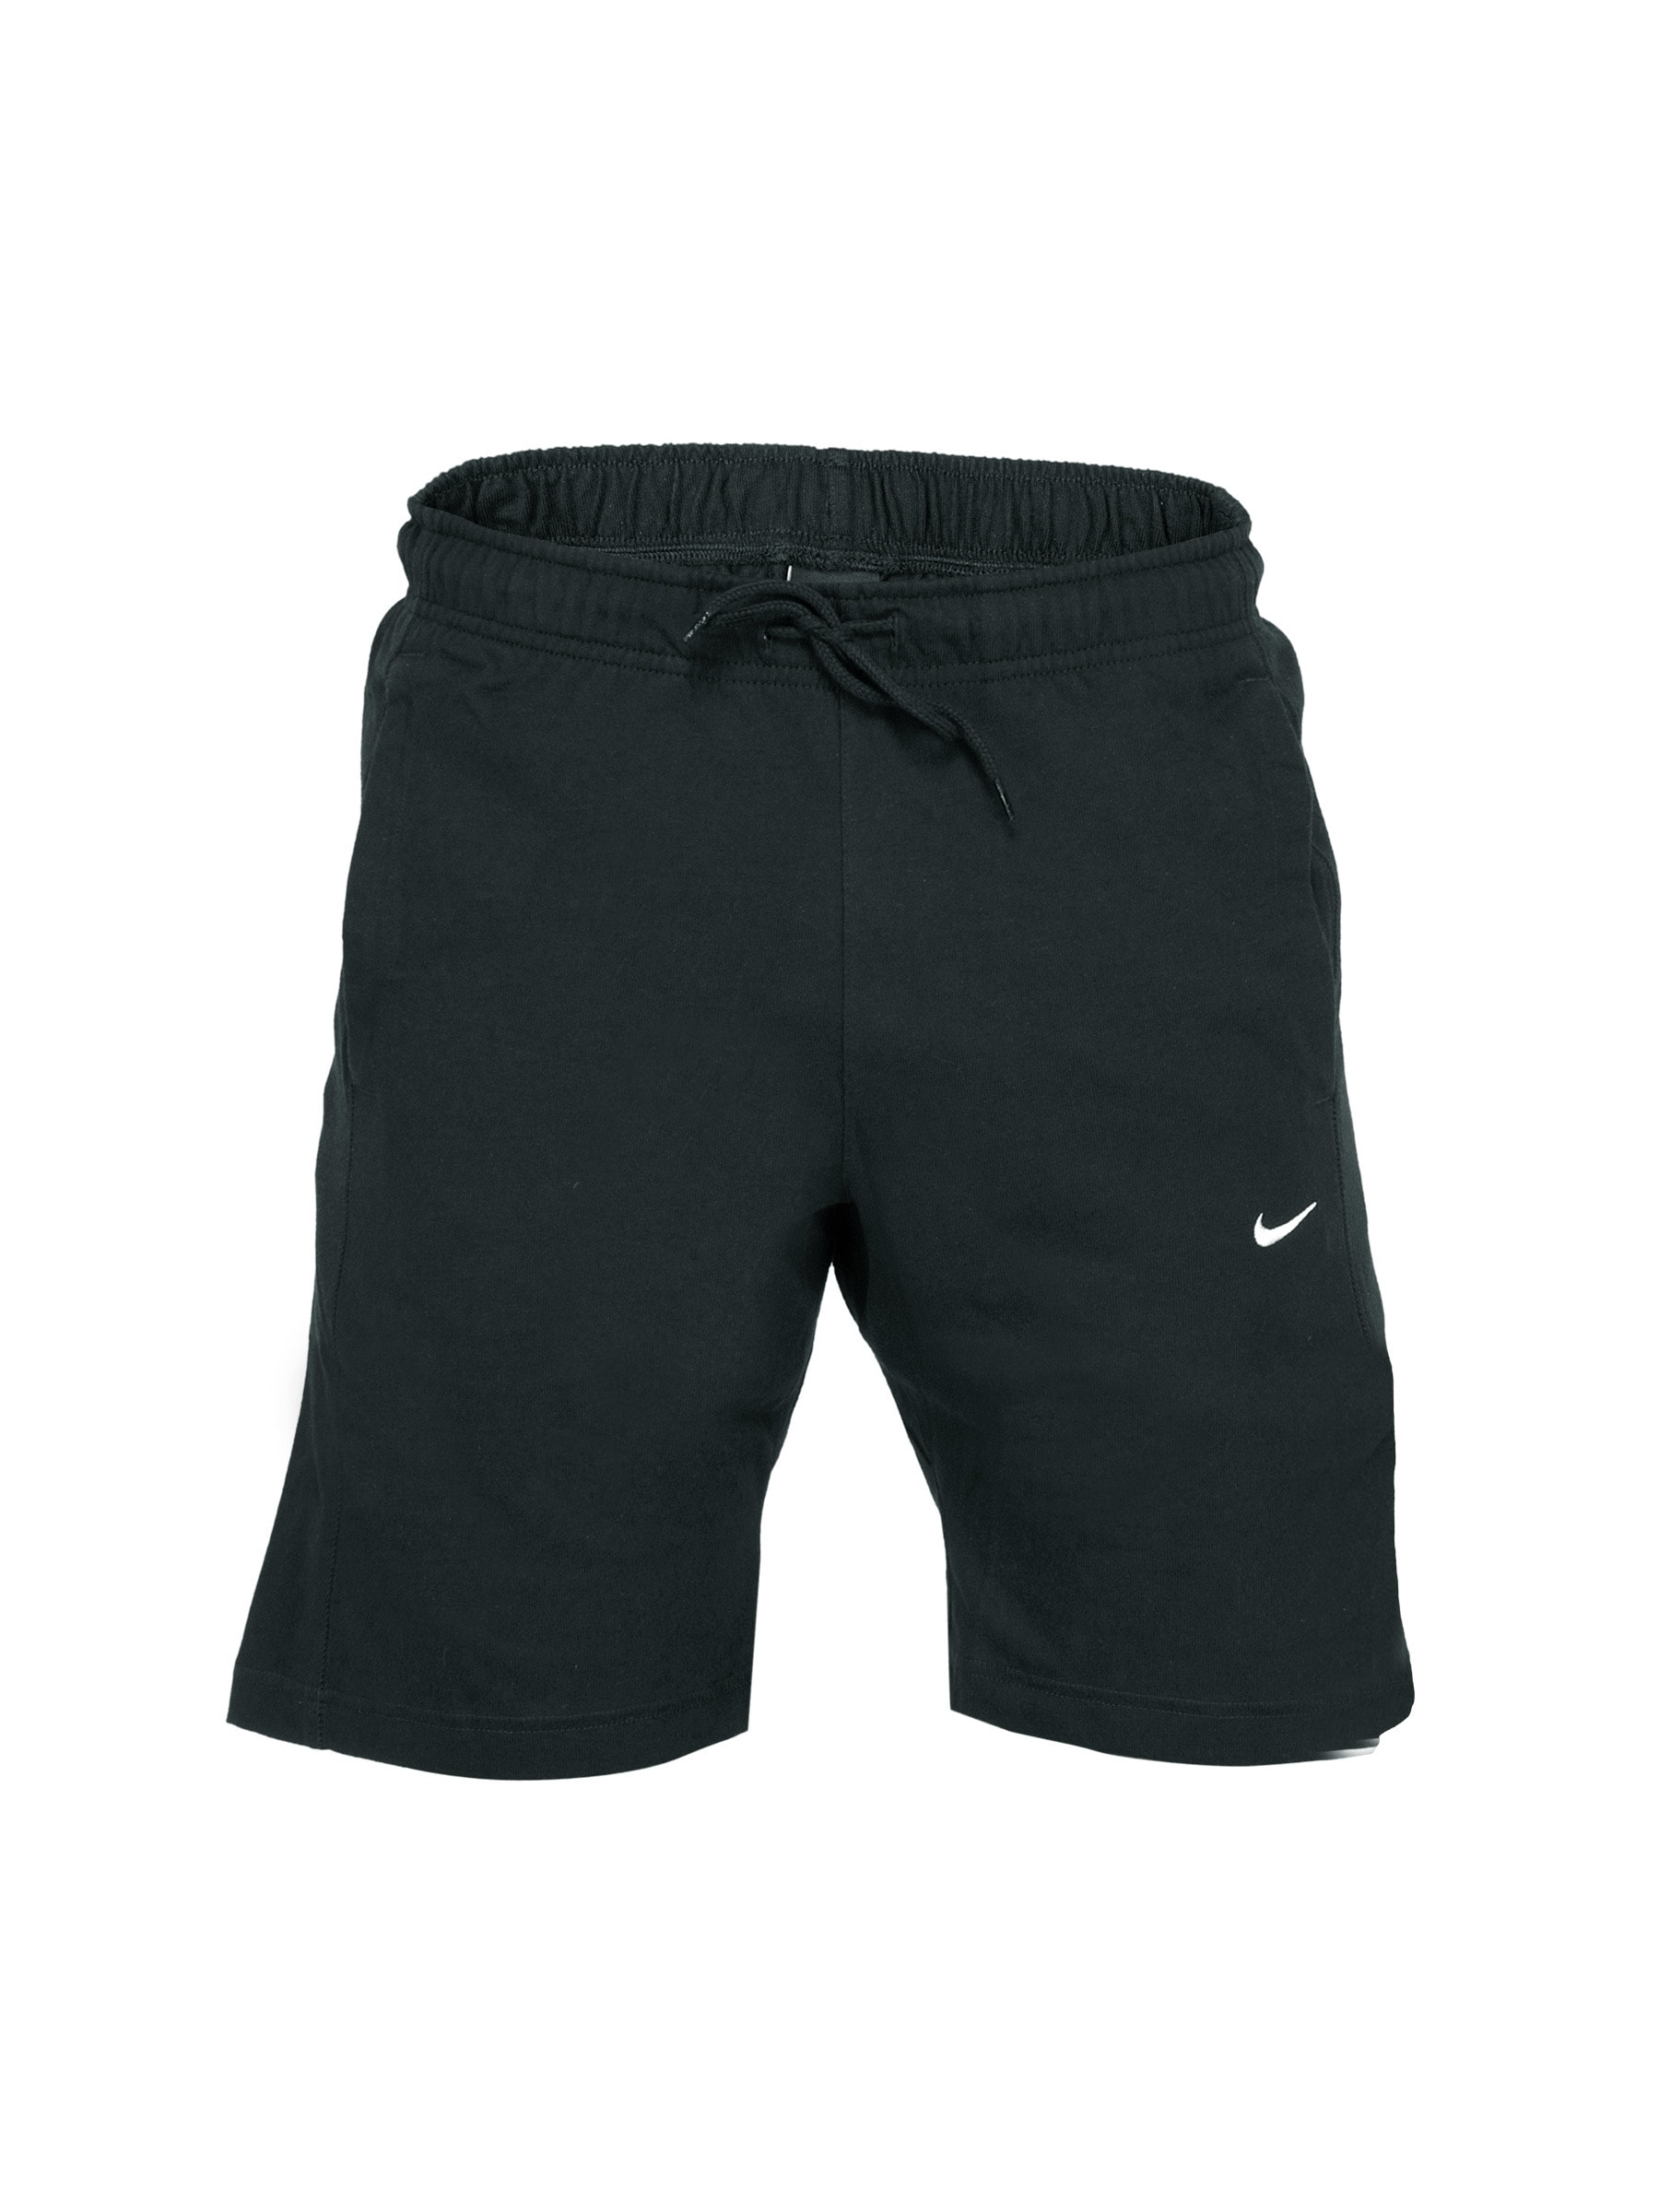 Nike Black Dri-fit Cotton     Cricket  Shorts